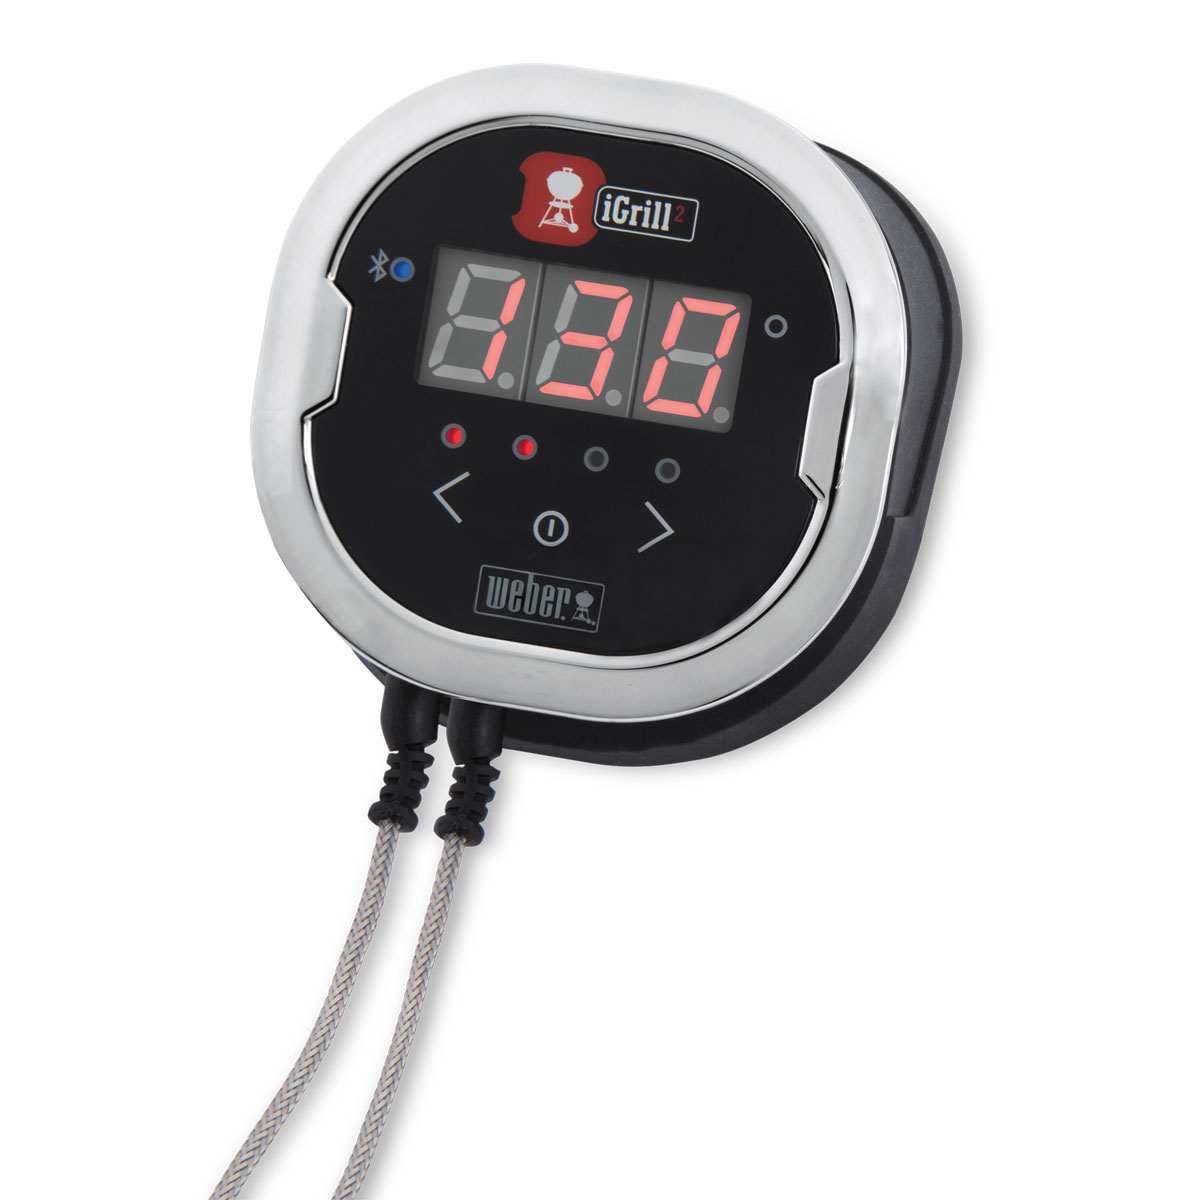 Цифровой термометр iGrill 2 (7221)